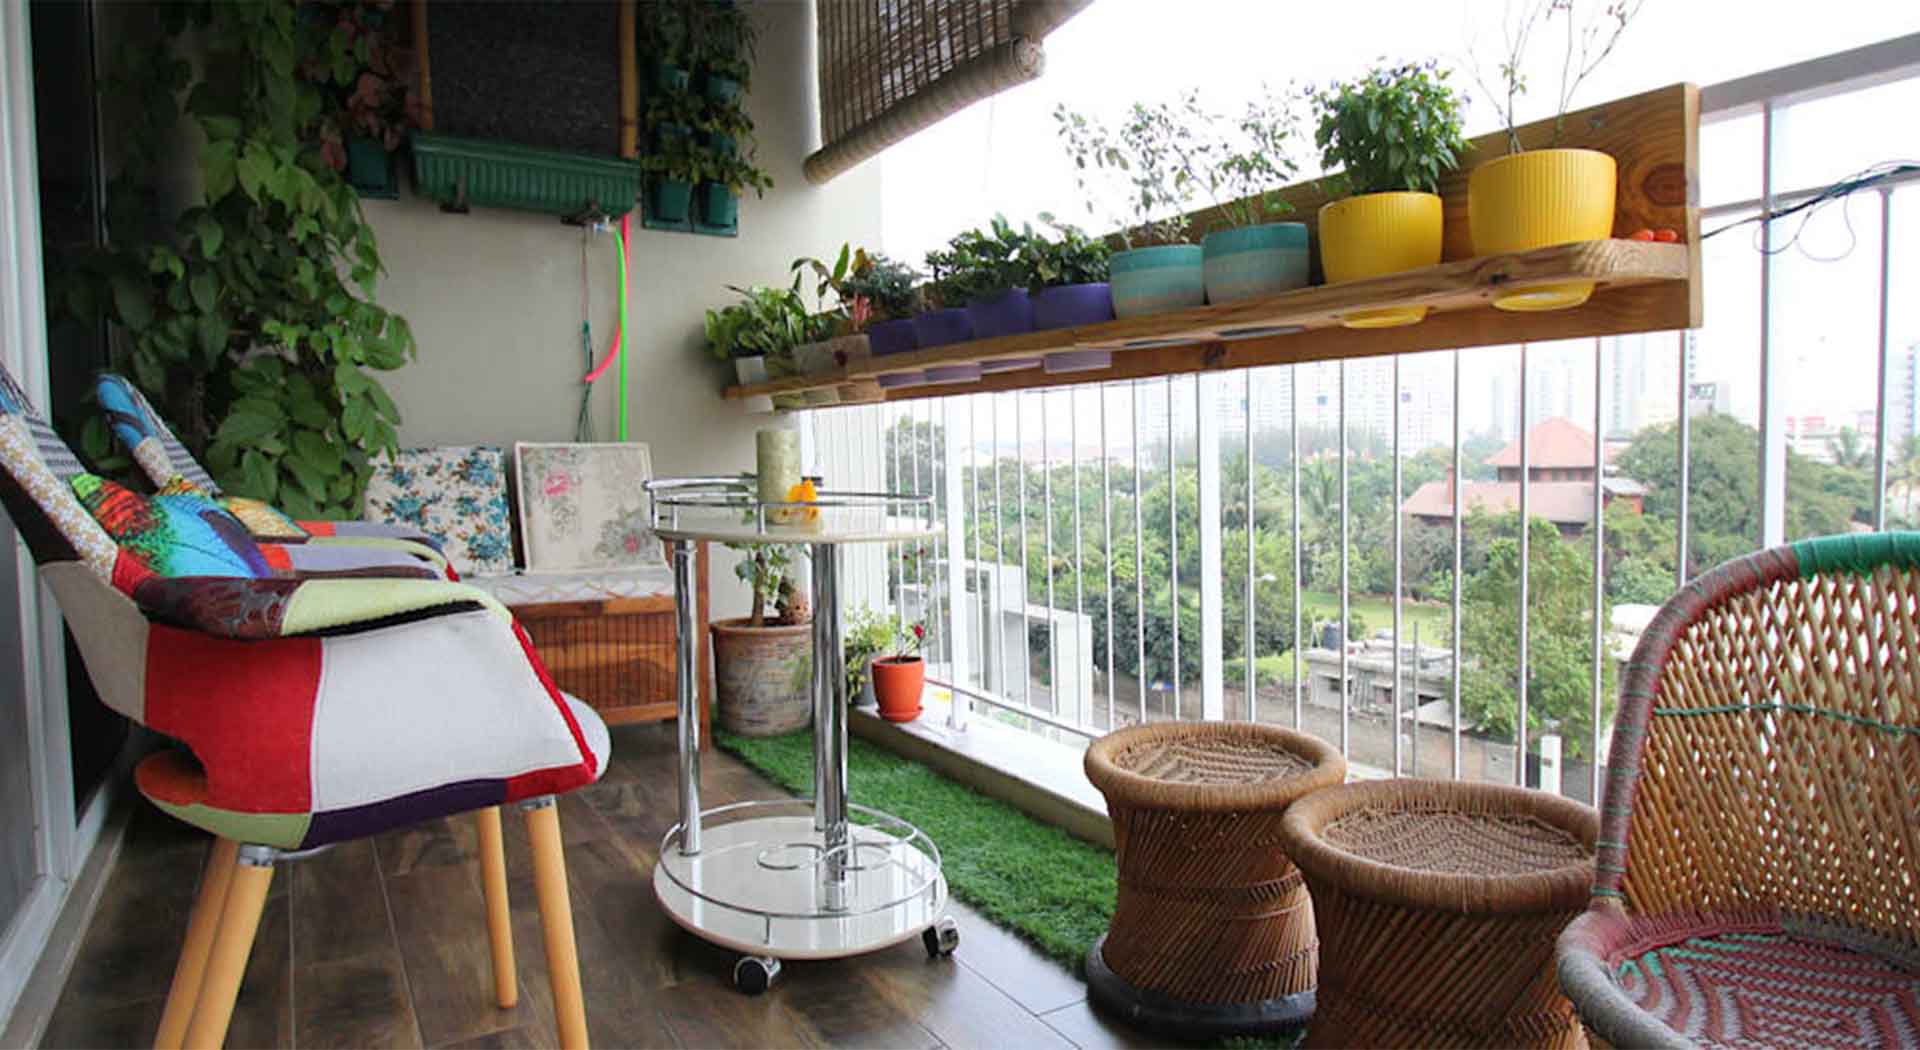 dreamy balcony decor ideas for home